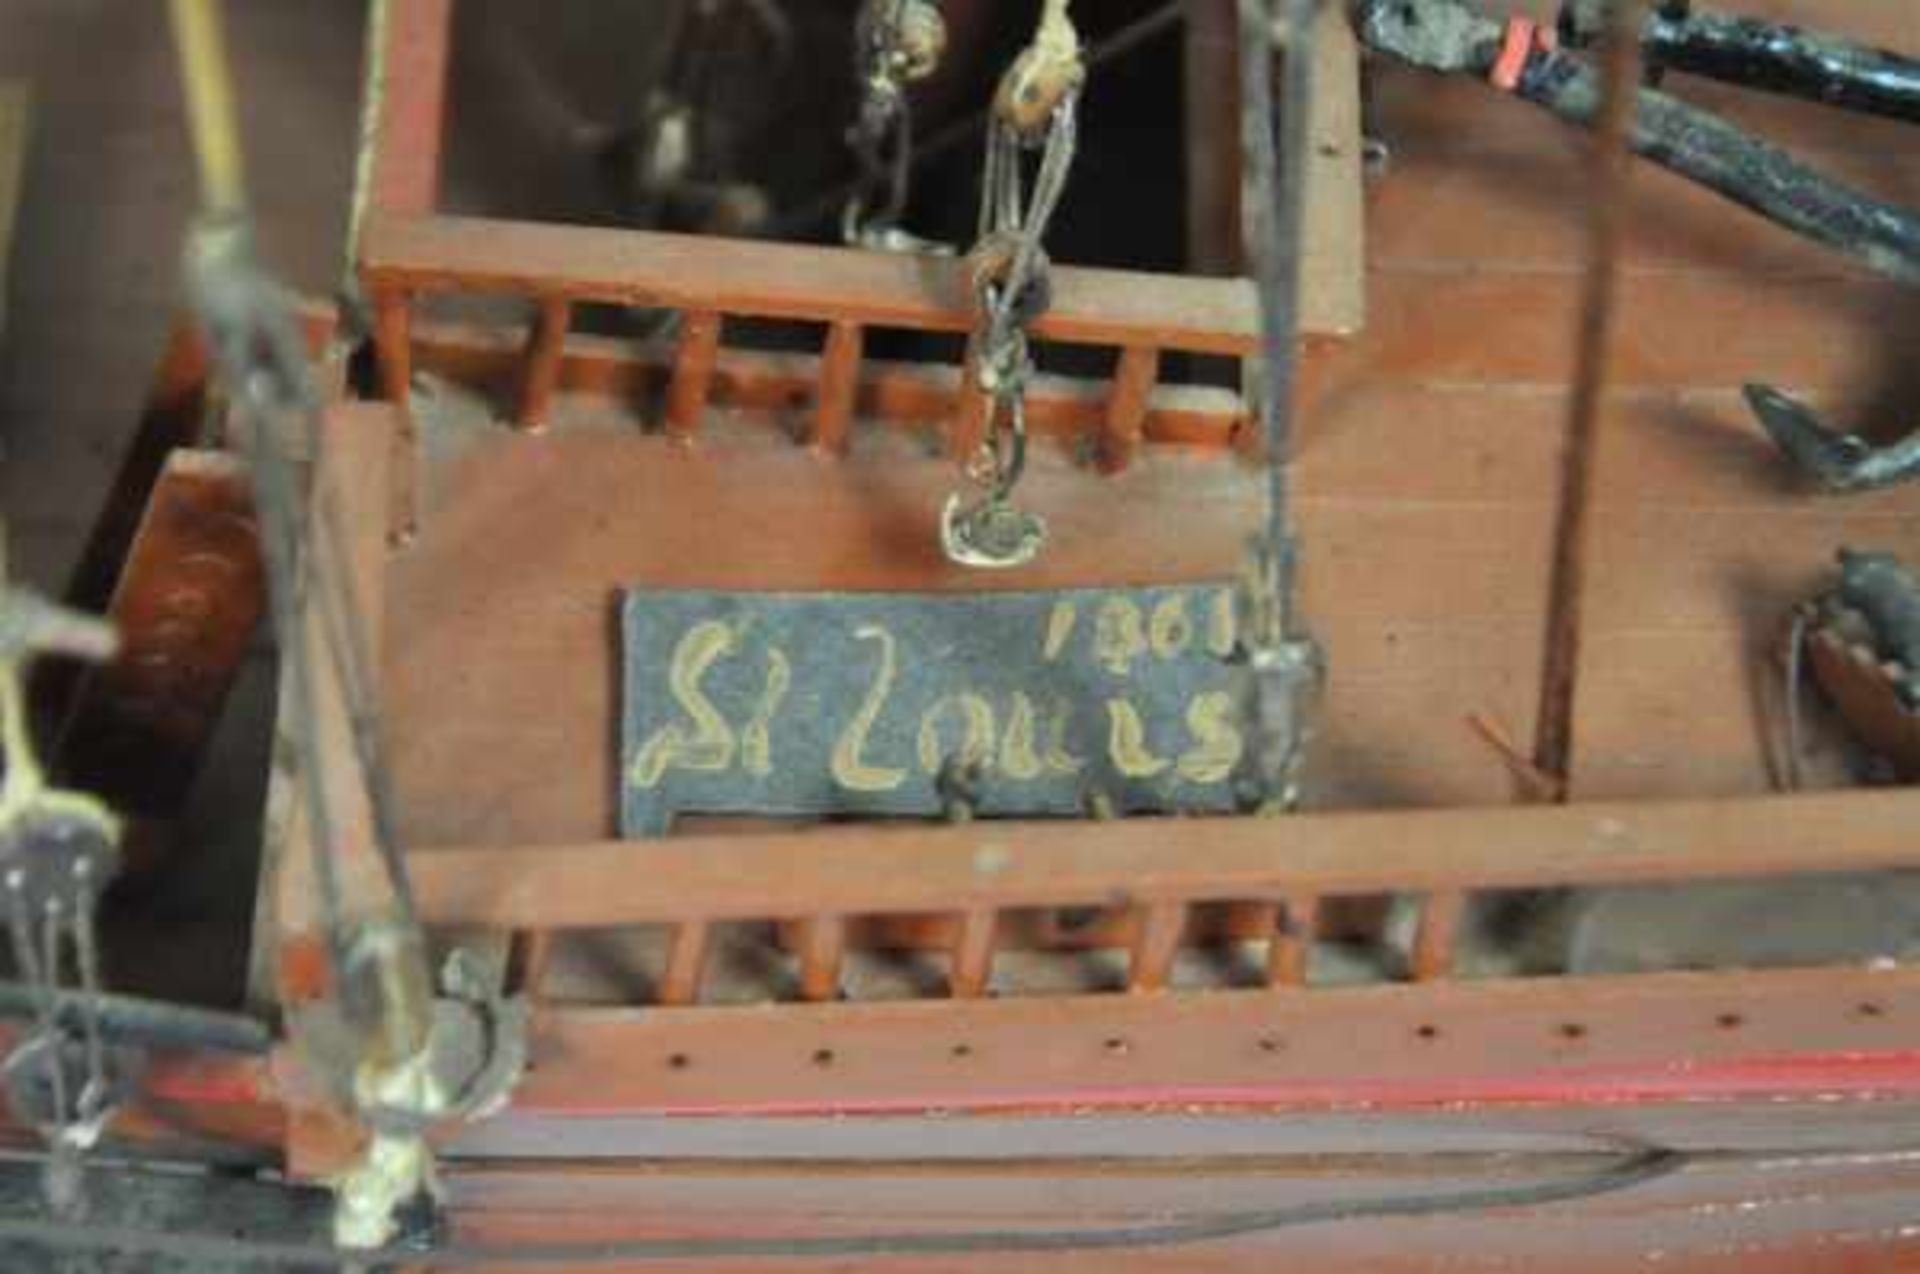 SEGELSCHIFF "St. Louis", Dreimaster, mit beweglichem Heckruder u. Stoffsegeln, bemaltes Holz, H 75cm - Bild 3 aus 3